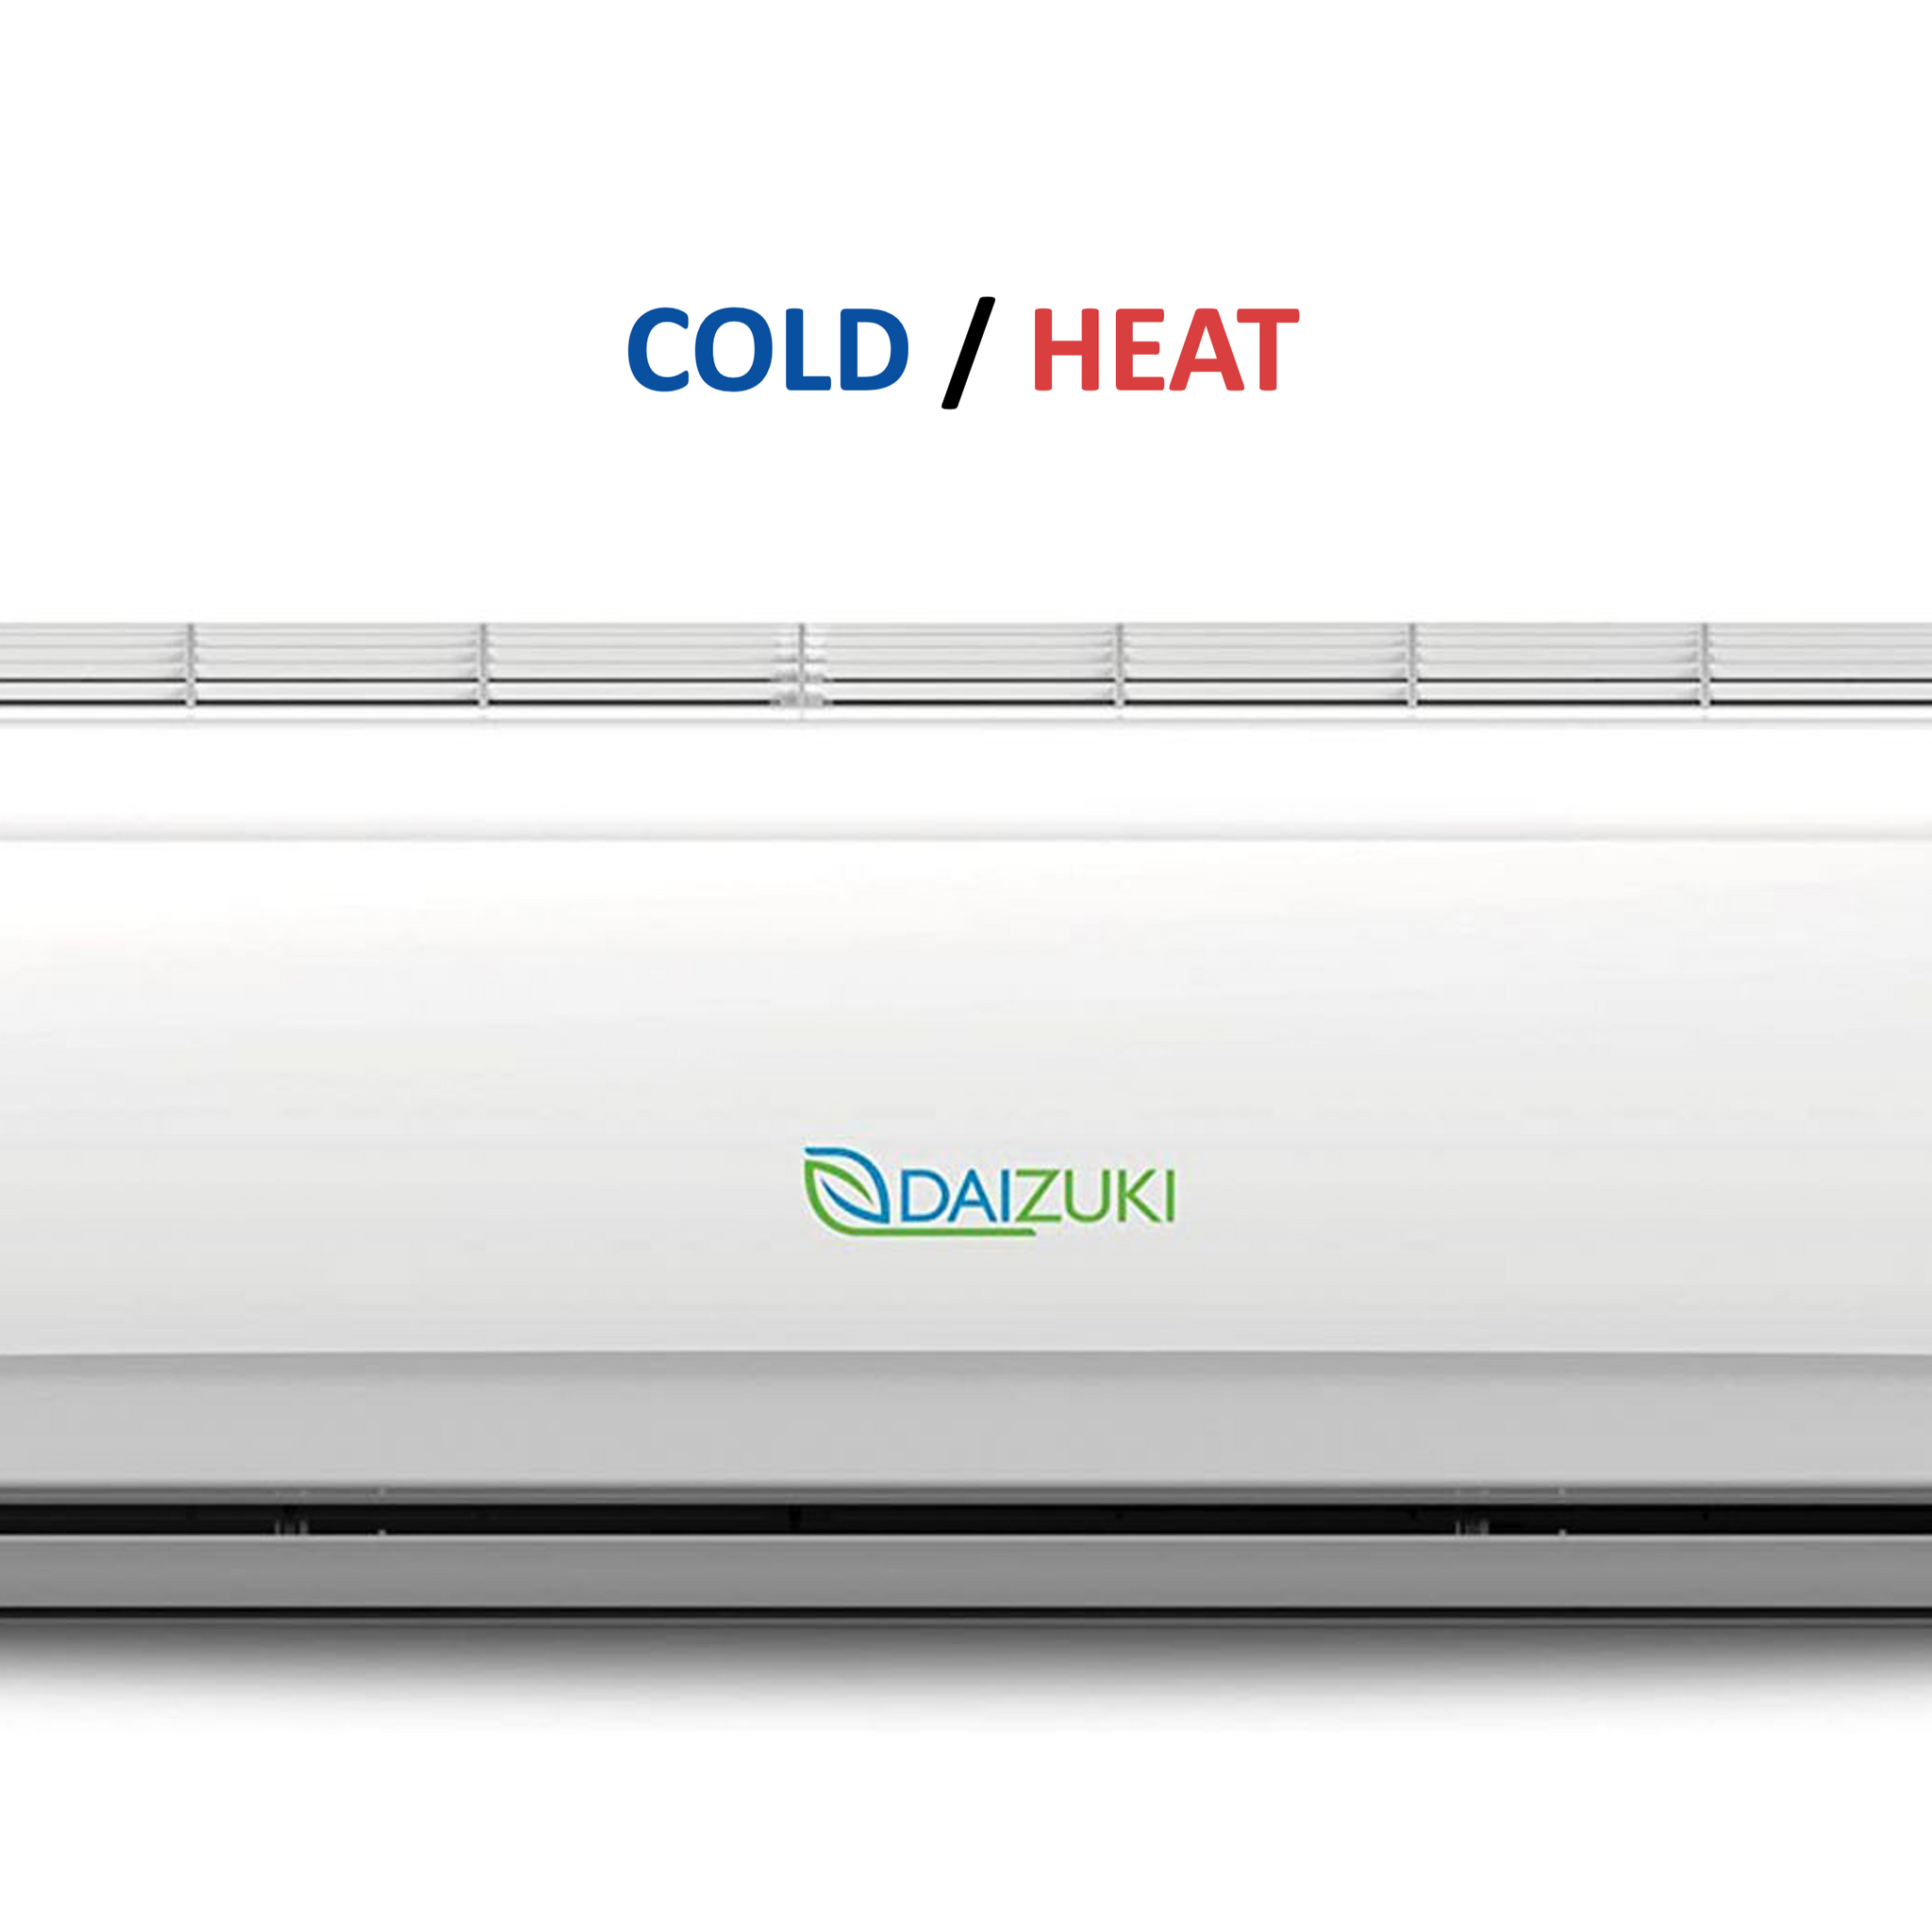 Minisplit Cold/Heat Air conditioner - 36,000BTU / 220V (19 SEER) - DAIZUKI